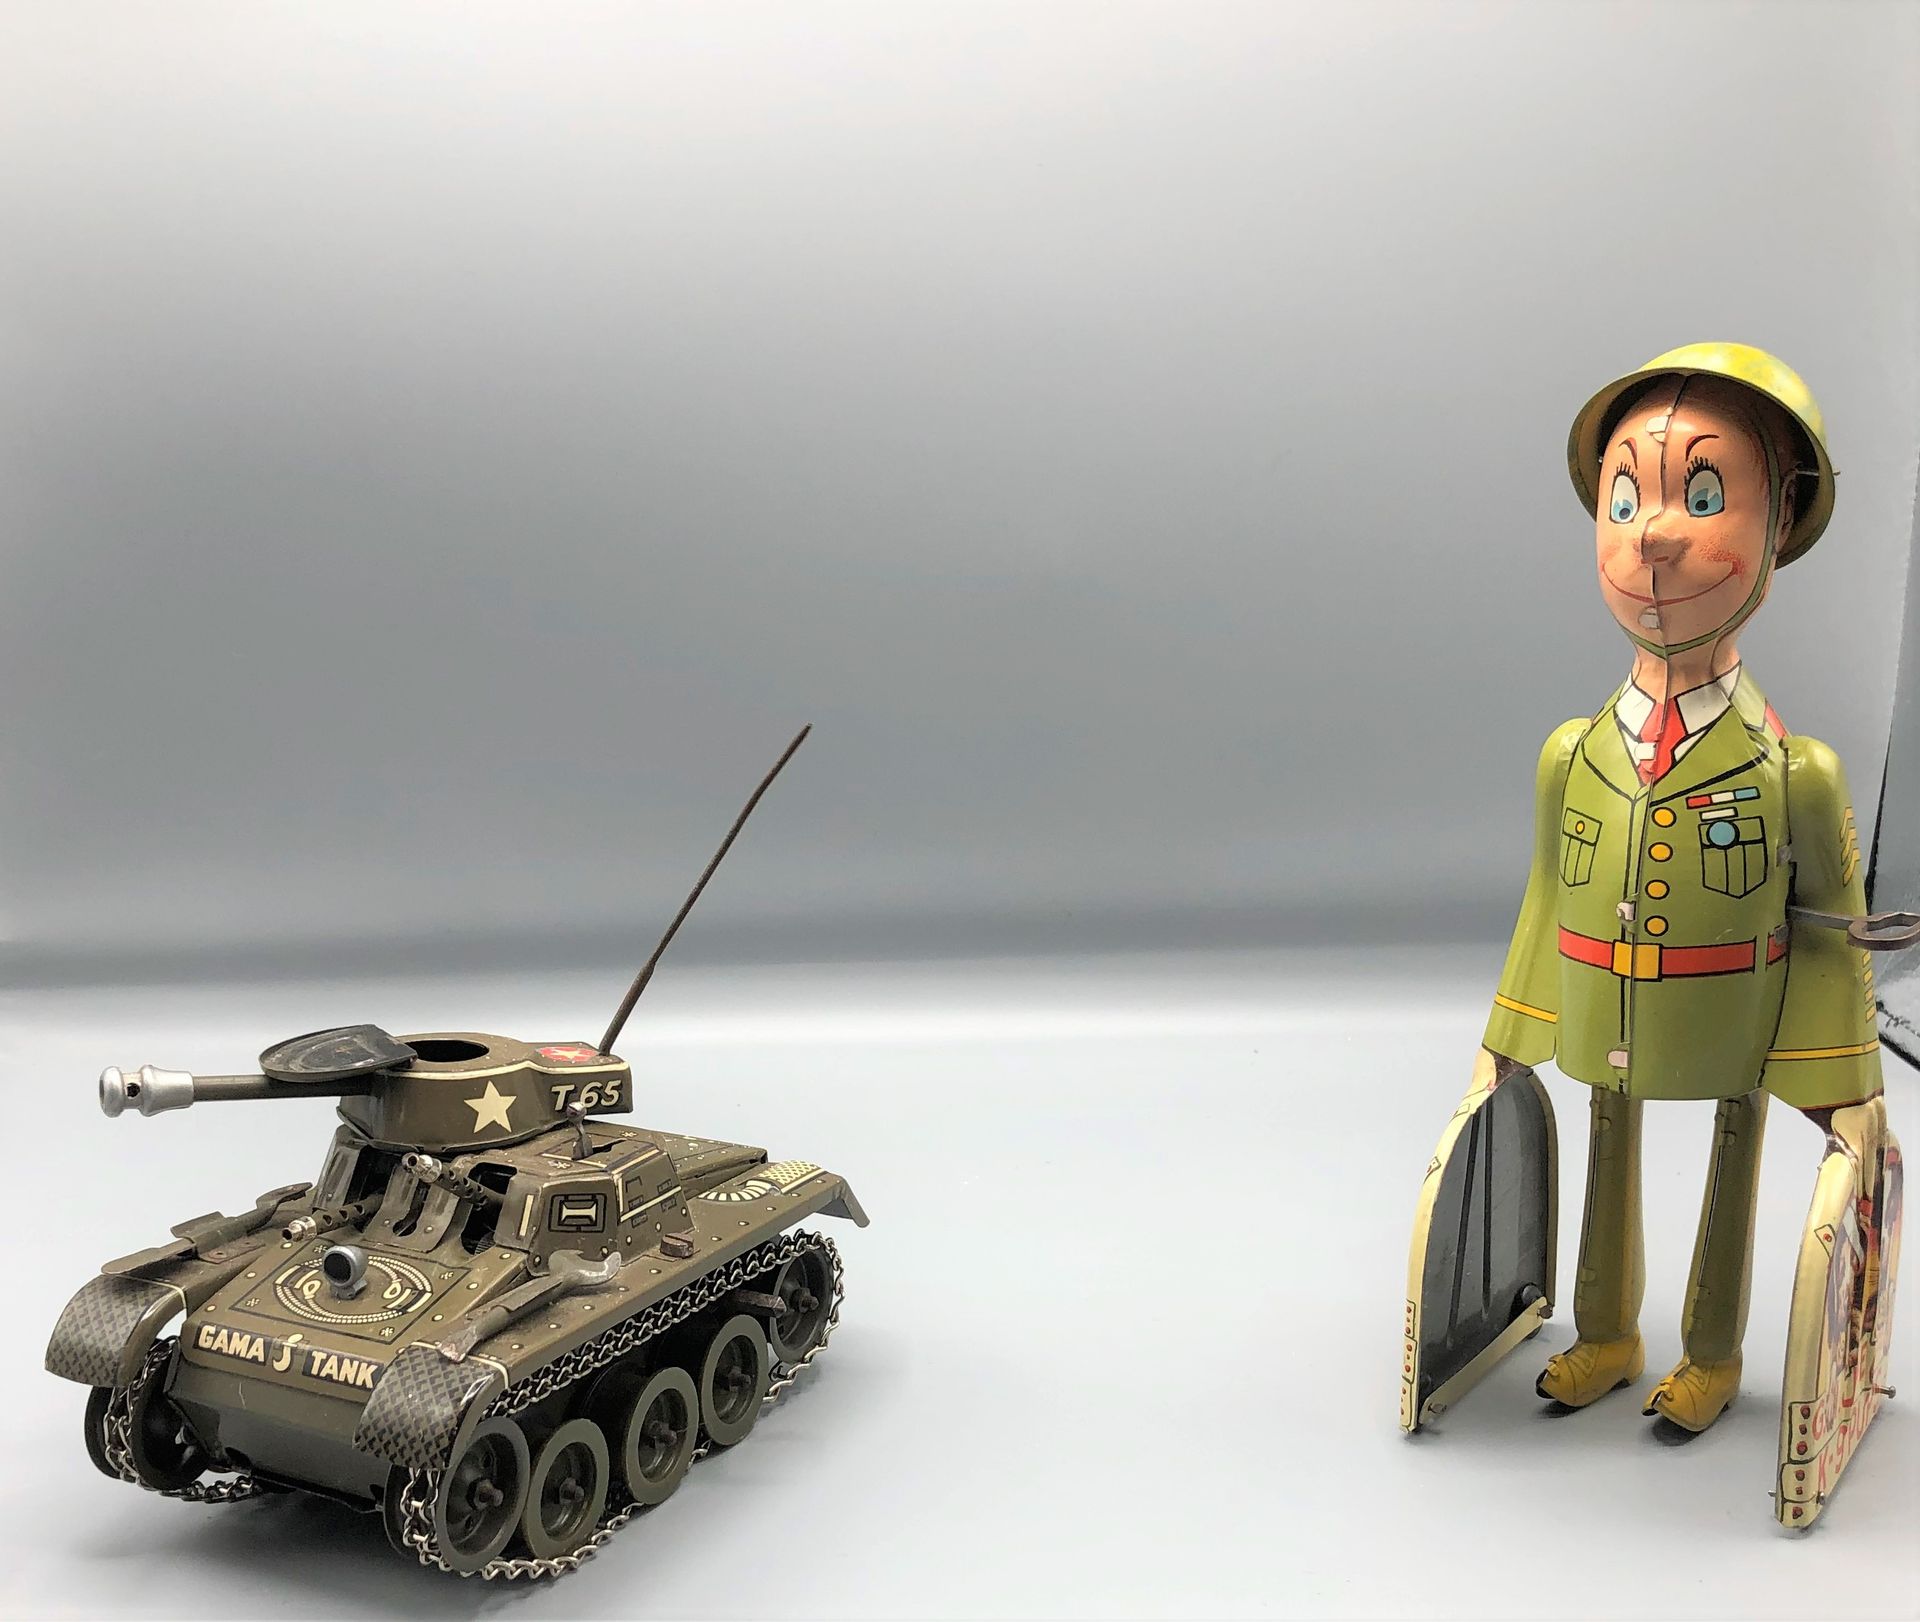 Null GAMA Tank US mécanique, UNIQUE ART : personnage GI Joe mécanique

1950



E&hellip;